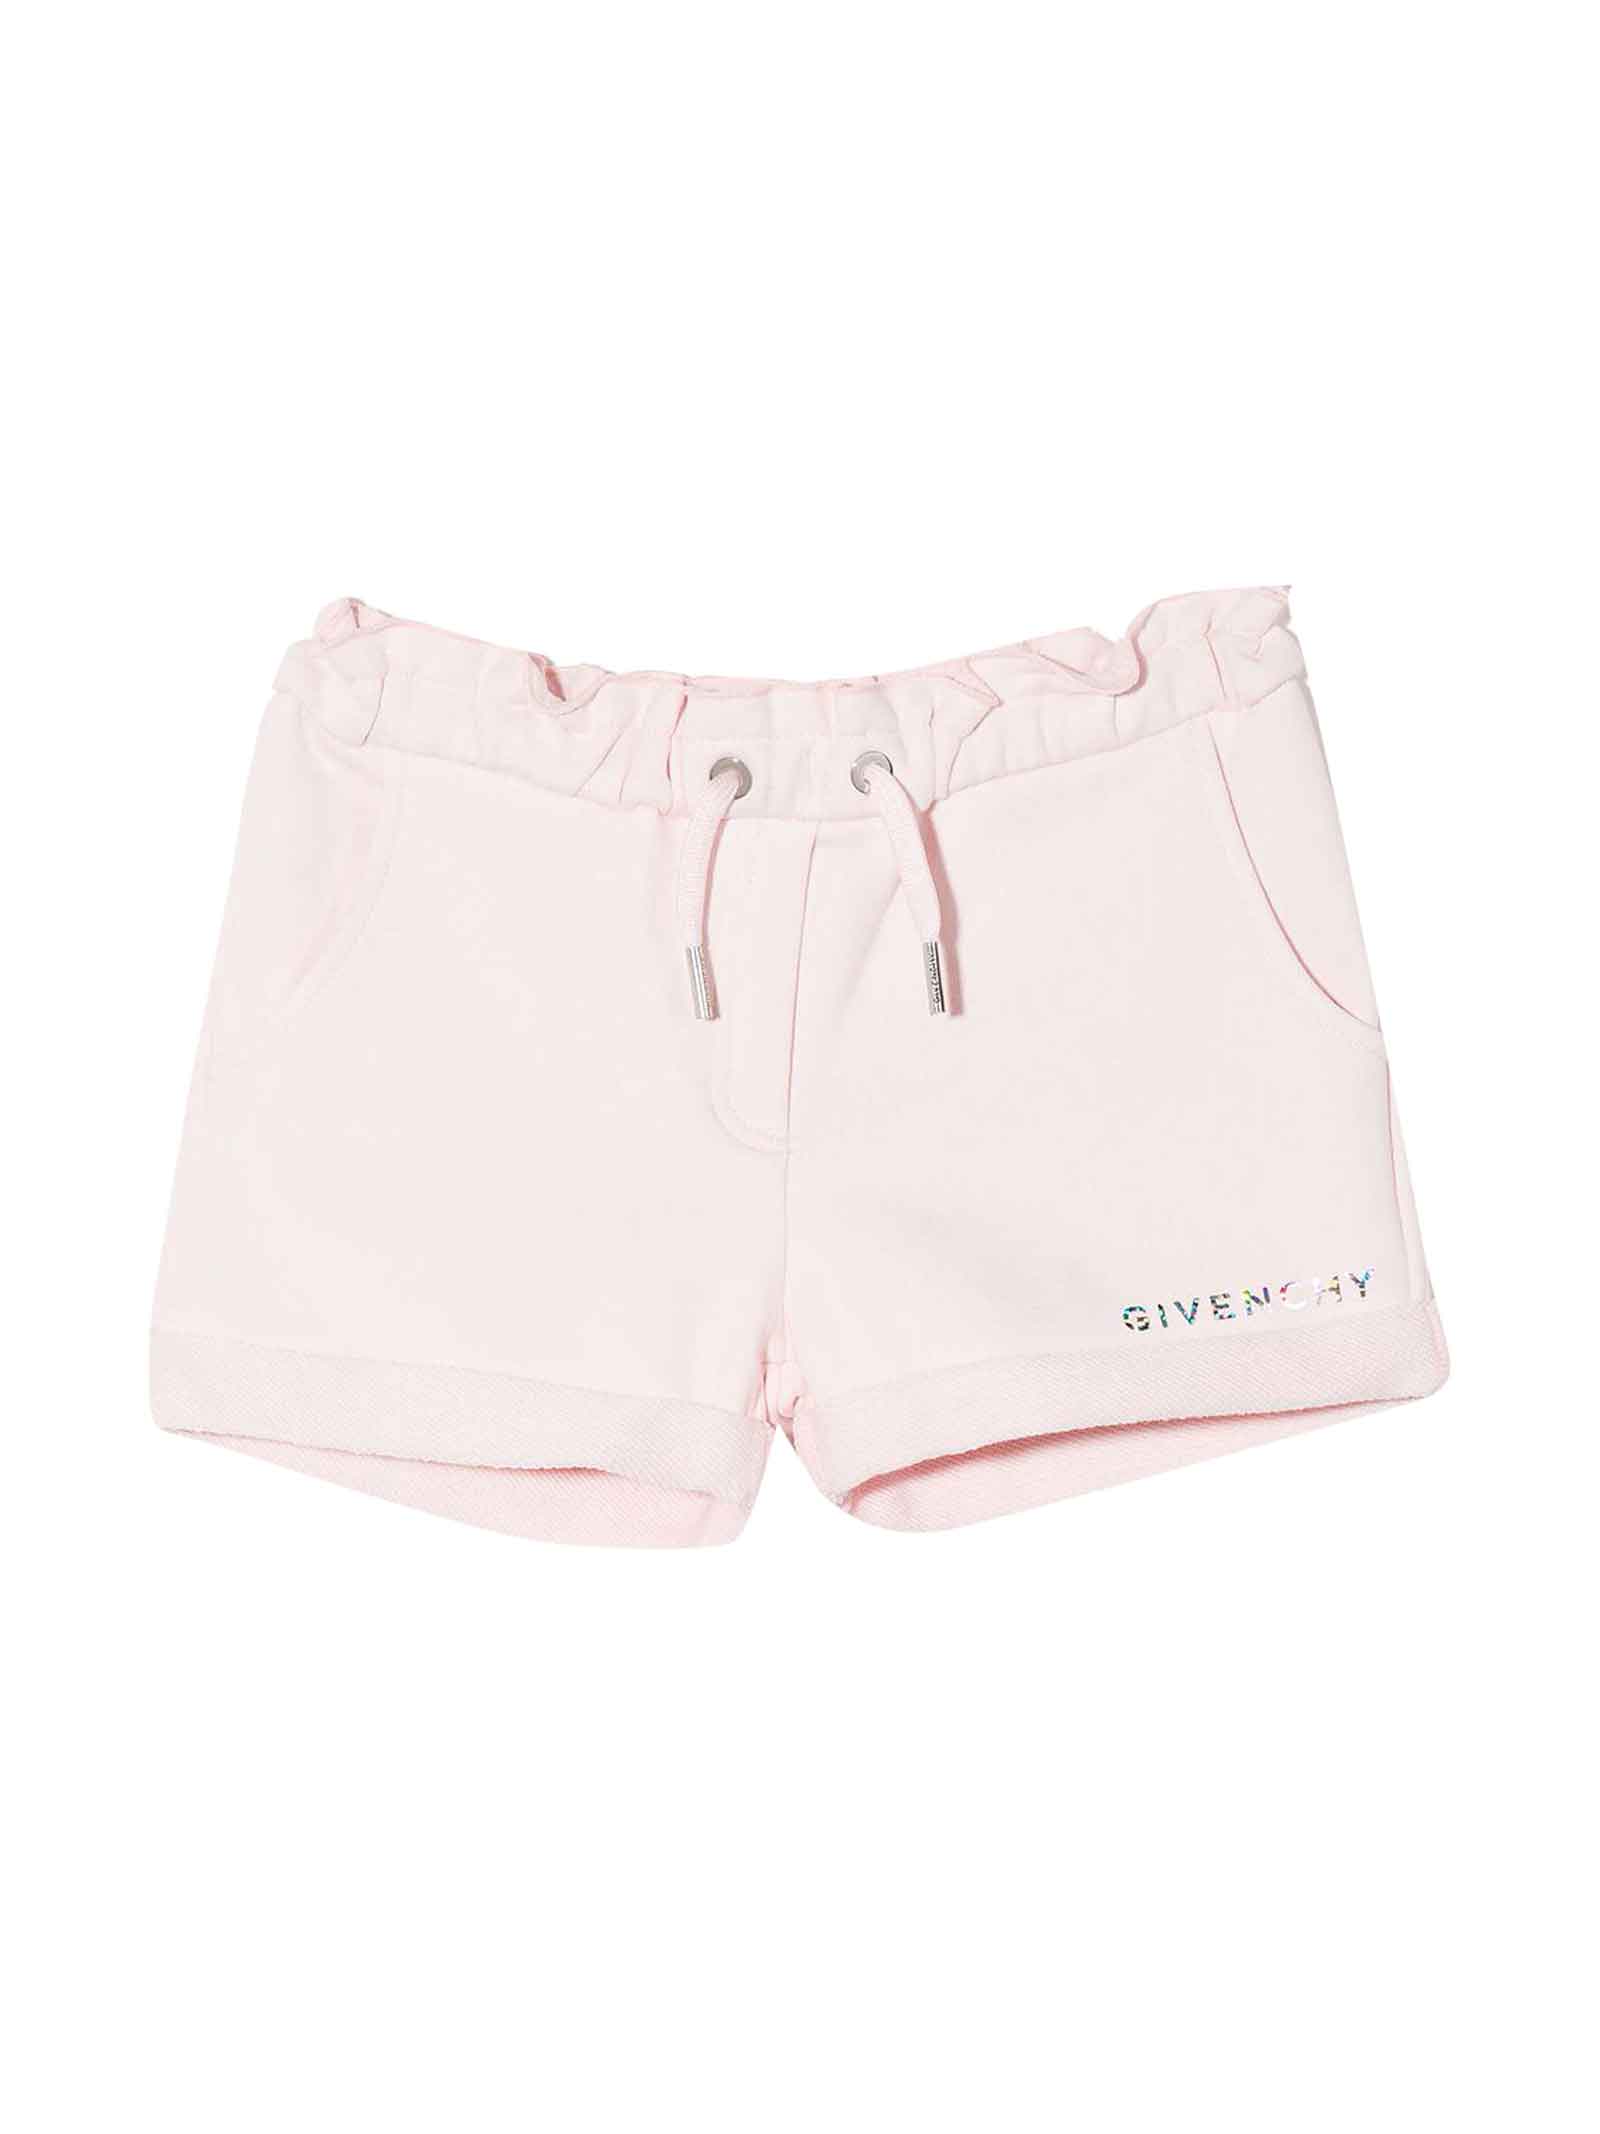 Givenchy Pink Shorts Bbay Girl